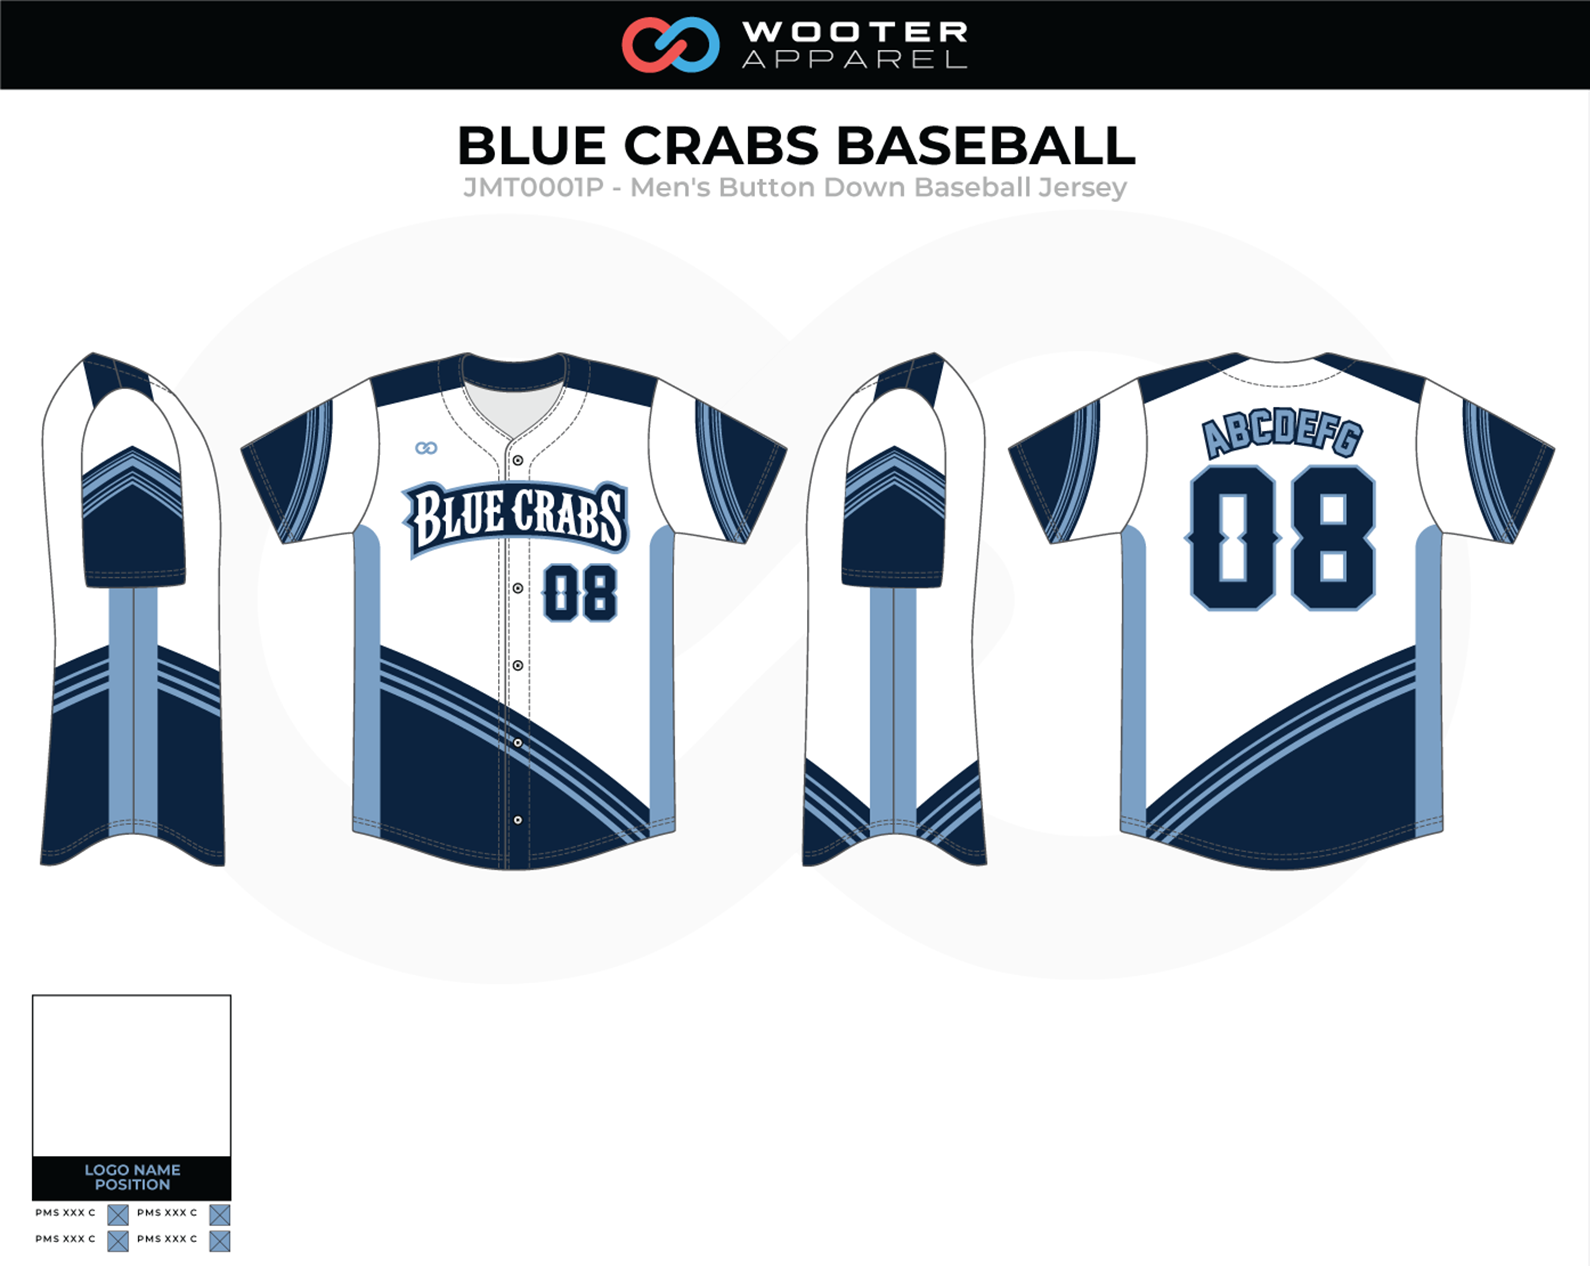 Custom Baseball Jerseys, Uniforms & Apparel, Wooter Apparel